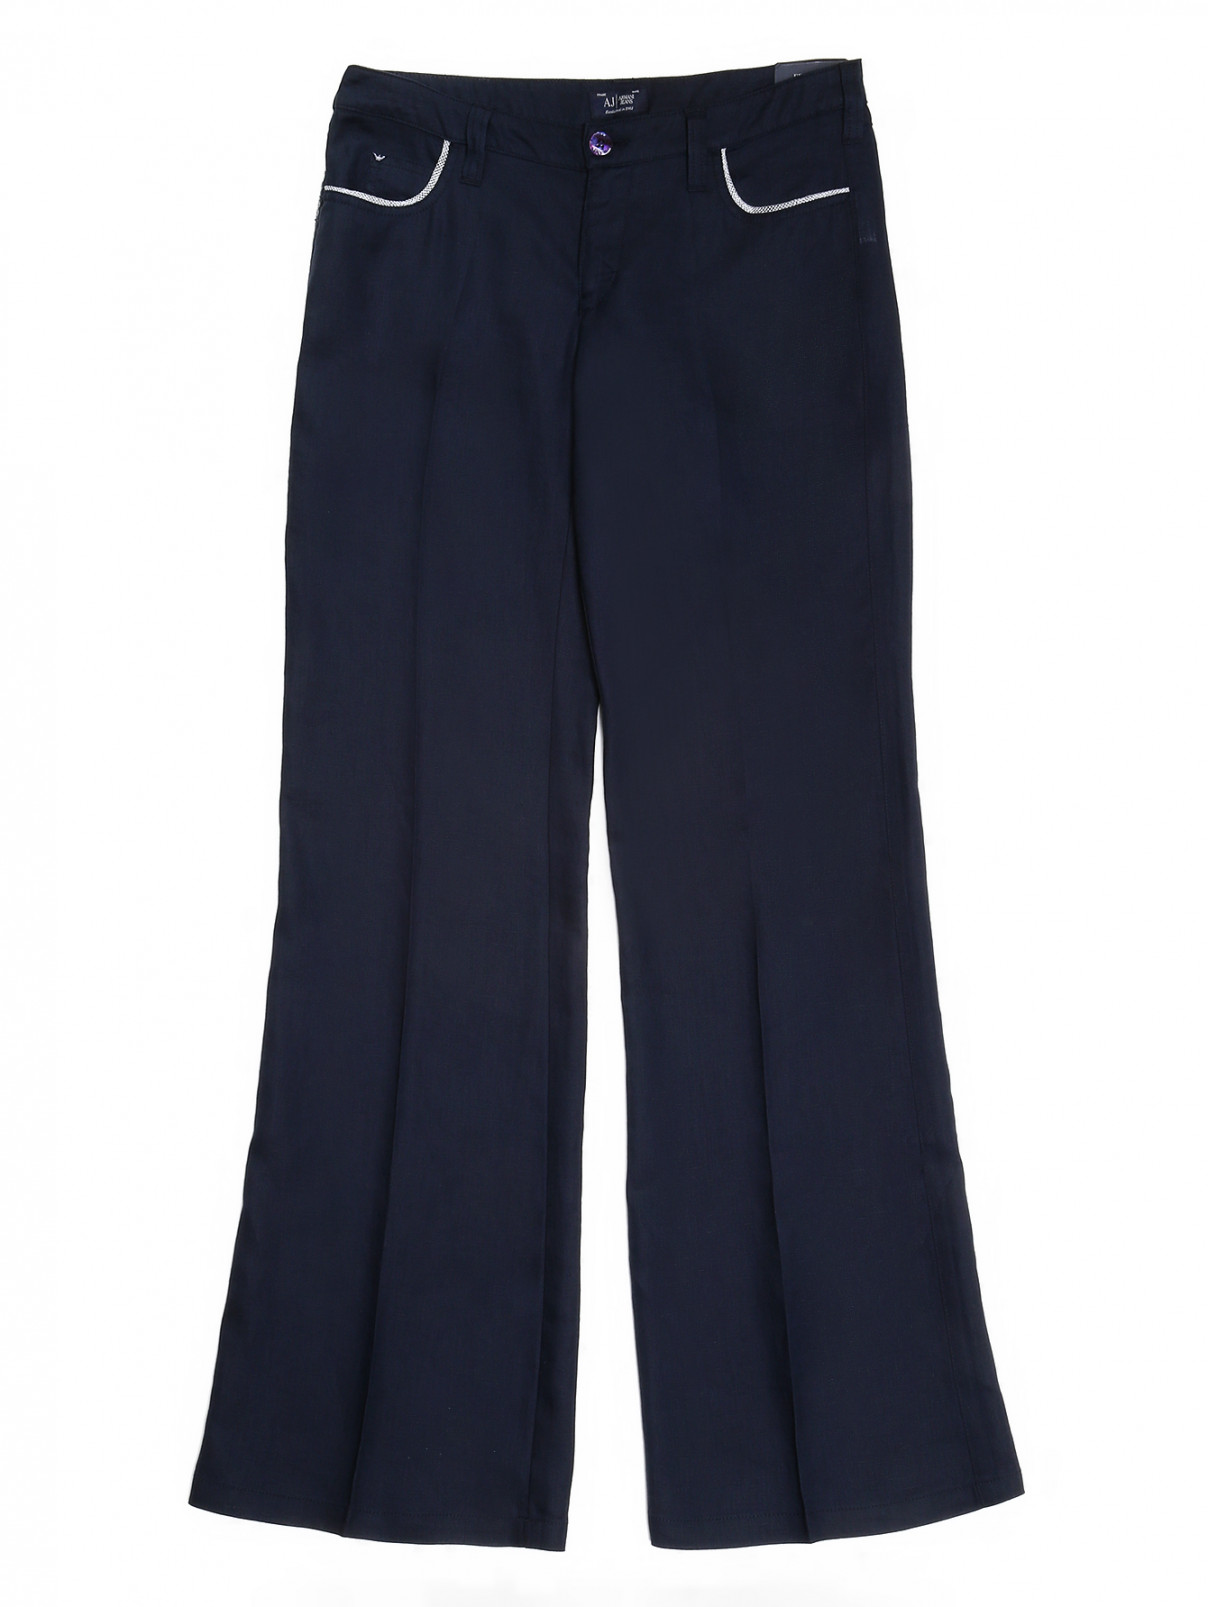 Льняные брюки-трубы с контрастной отделкой карманов Armani Jeans  –  Общий вид  – Цвет:  Синий